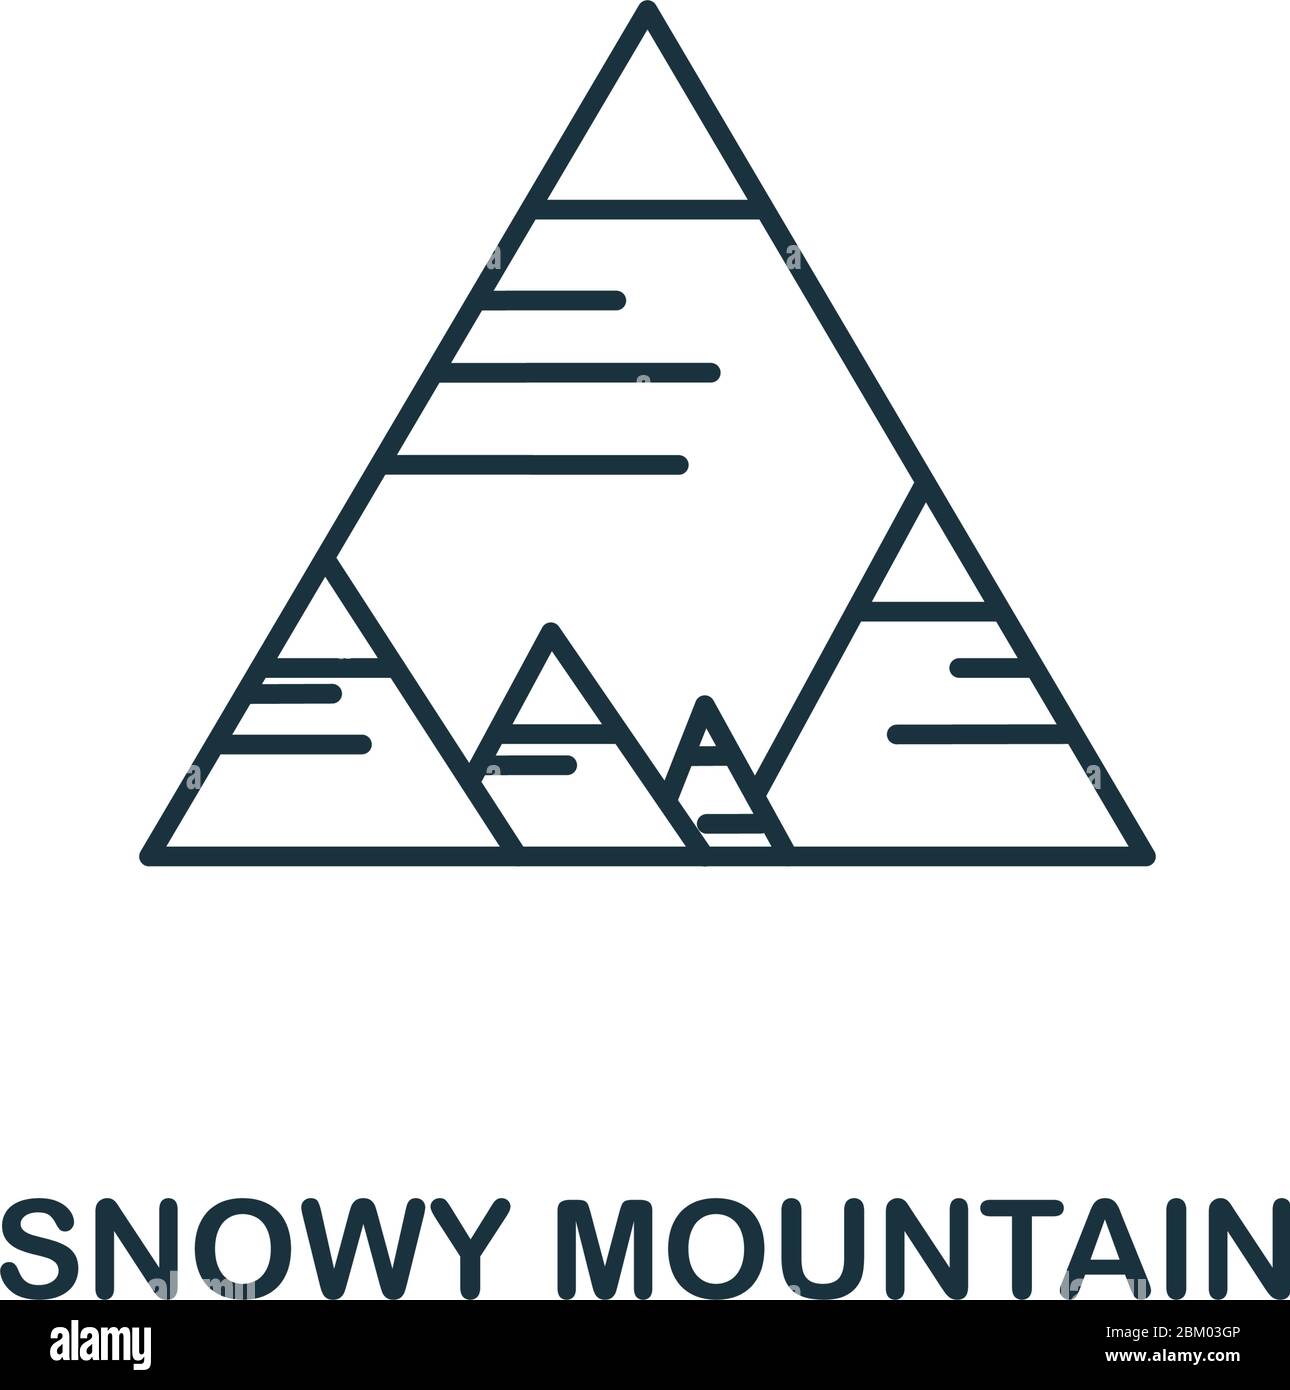 Icône de la montagne enneigée de la collection hiver. Elément de ligne simple Snowy Mountain pour les modèles, la conception web et les infographies Illustration de Vecteur